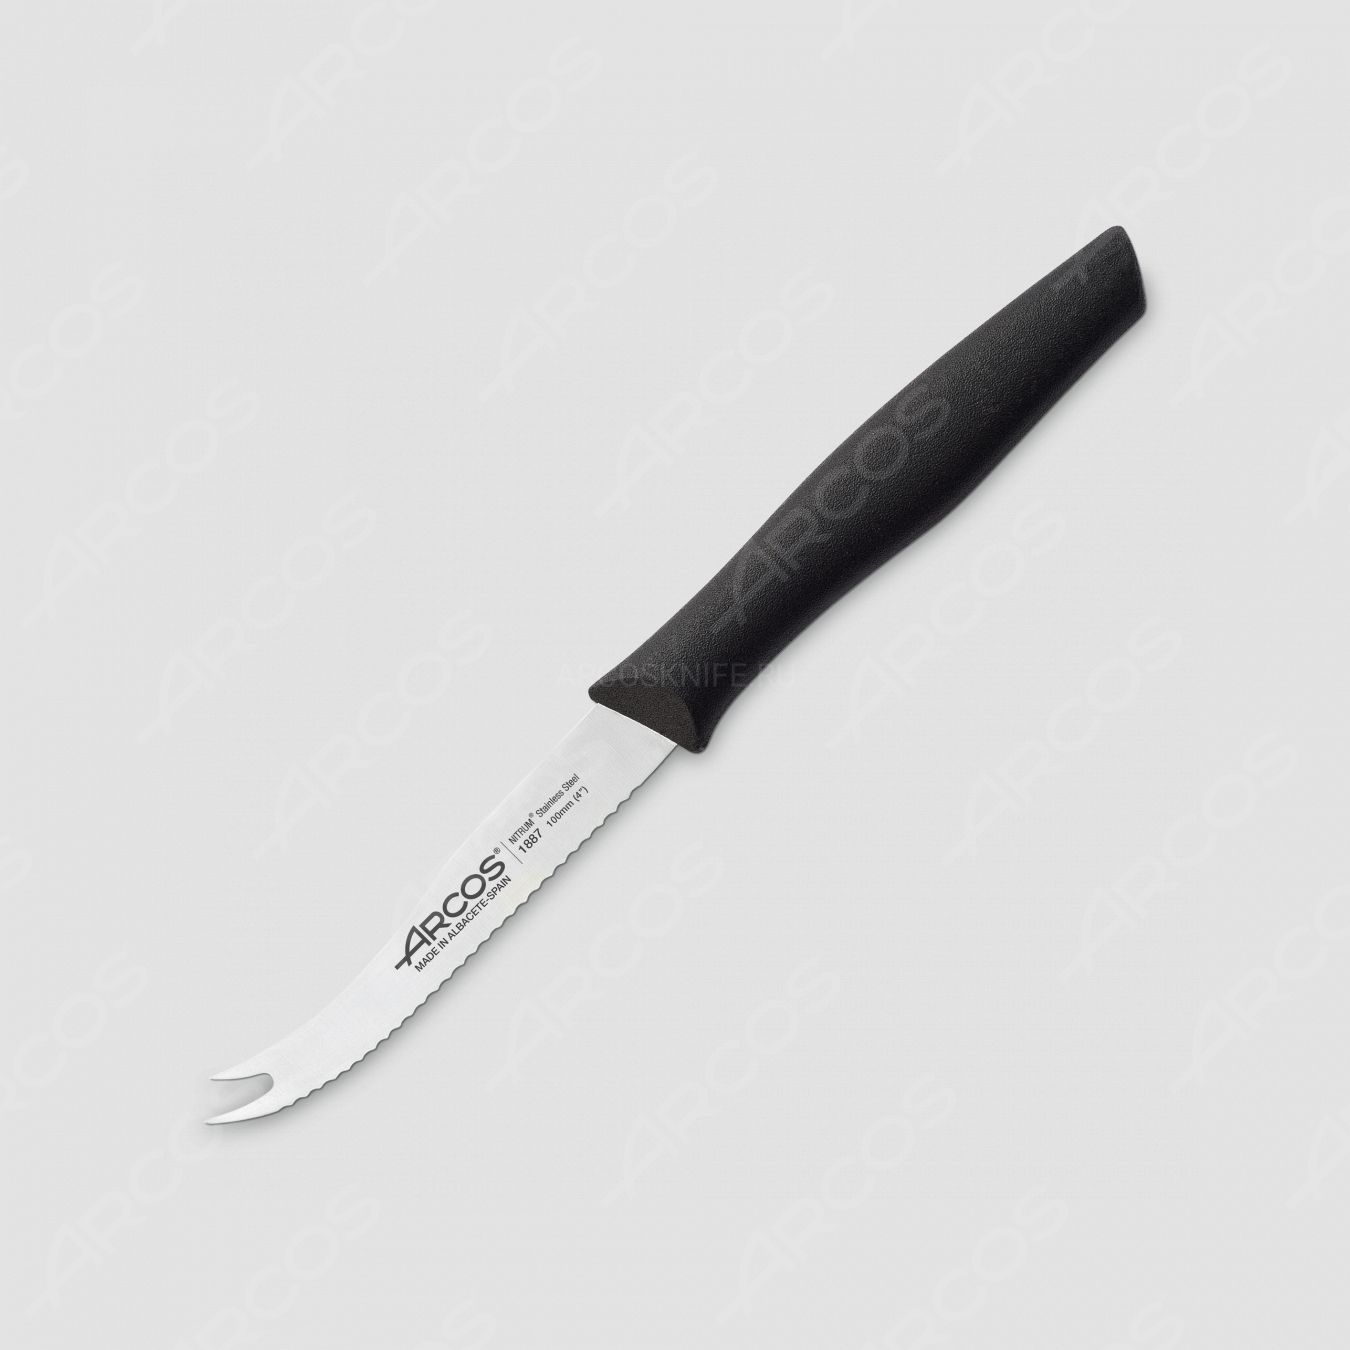 Нож кухонный для томатов и сыра 10,5 см, рукоять черная, серия Nova, ARCOS, Испания